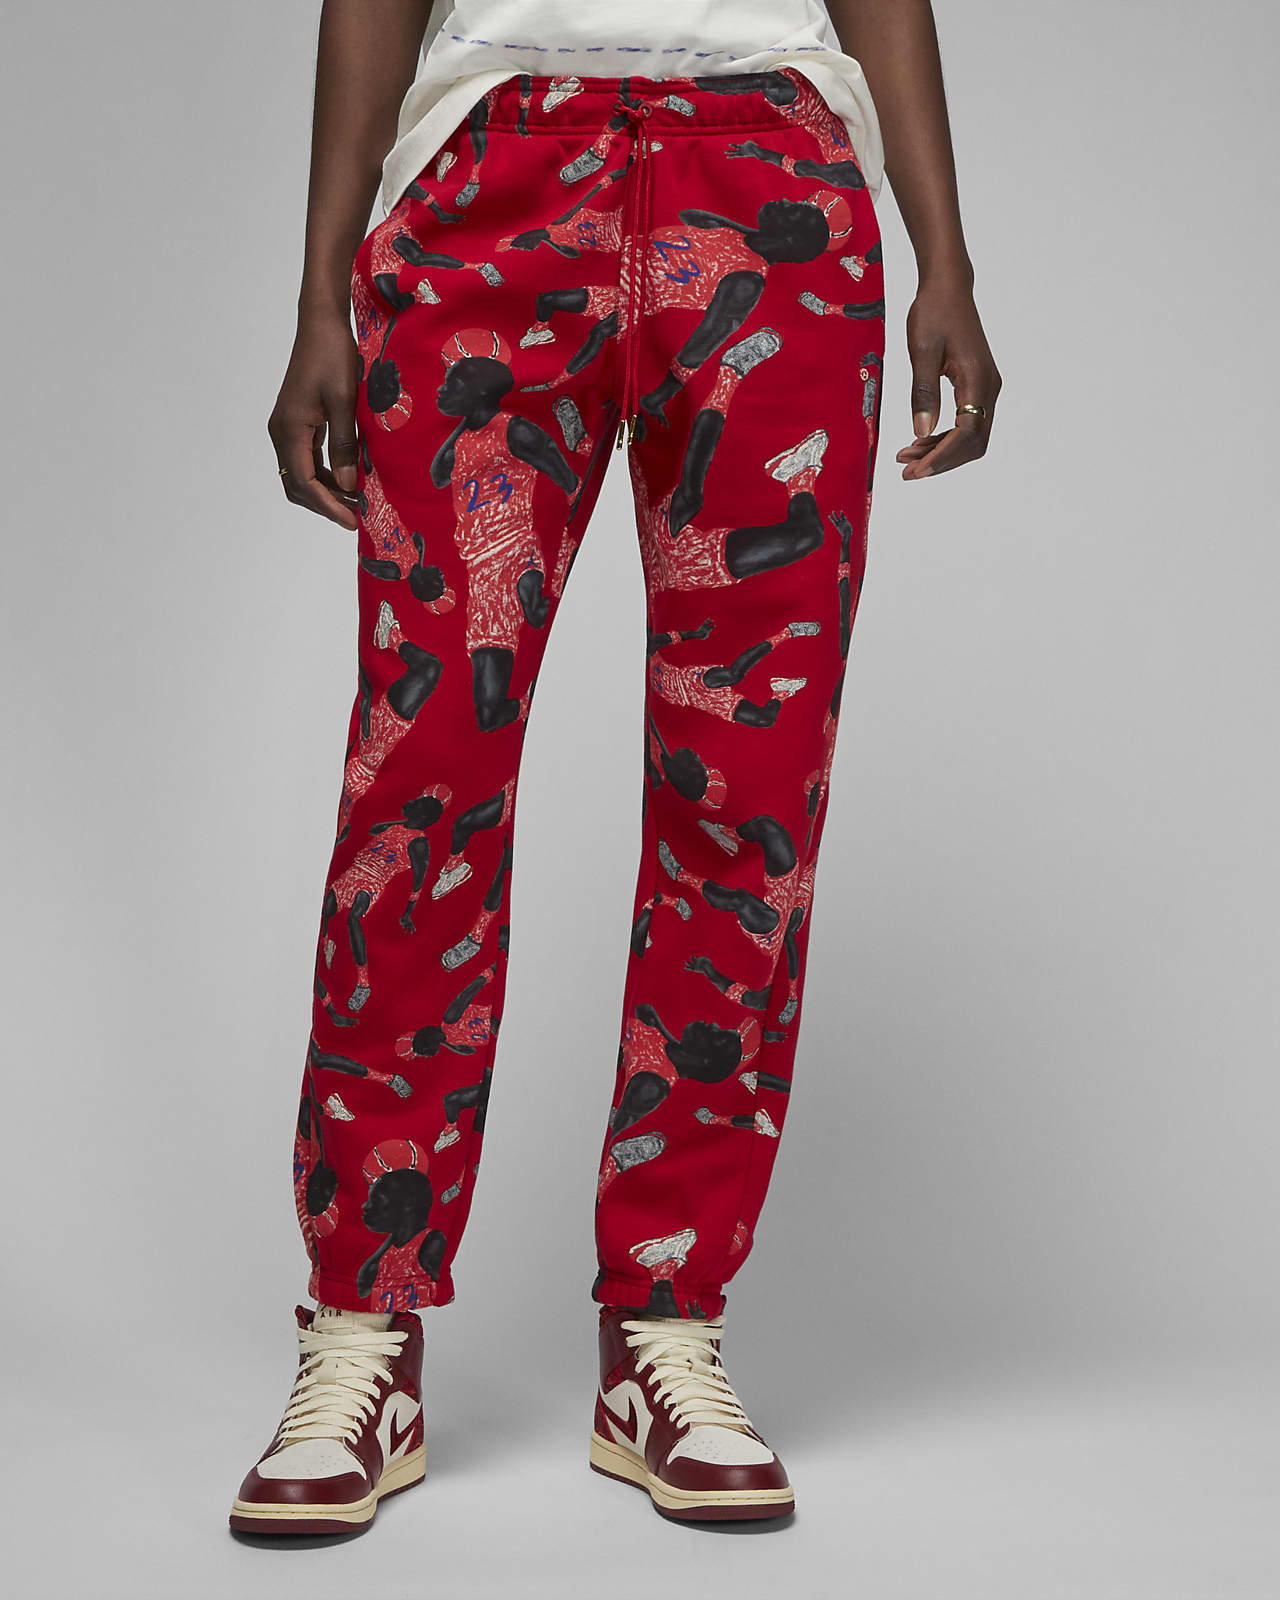 Jordan Artist Series by Parker Duncan Women's Brooklyn Fleece Trousers